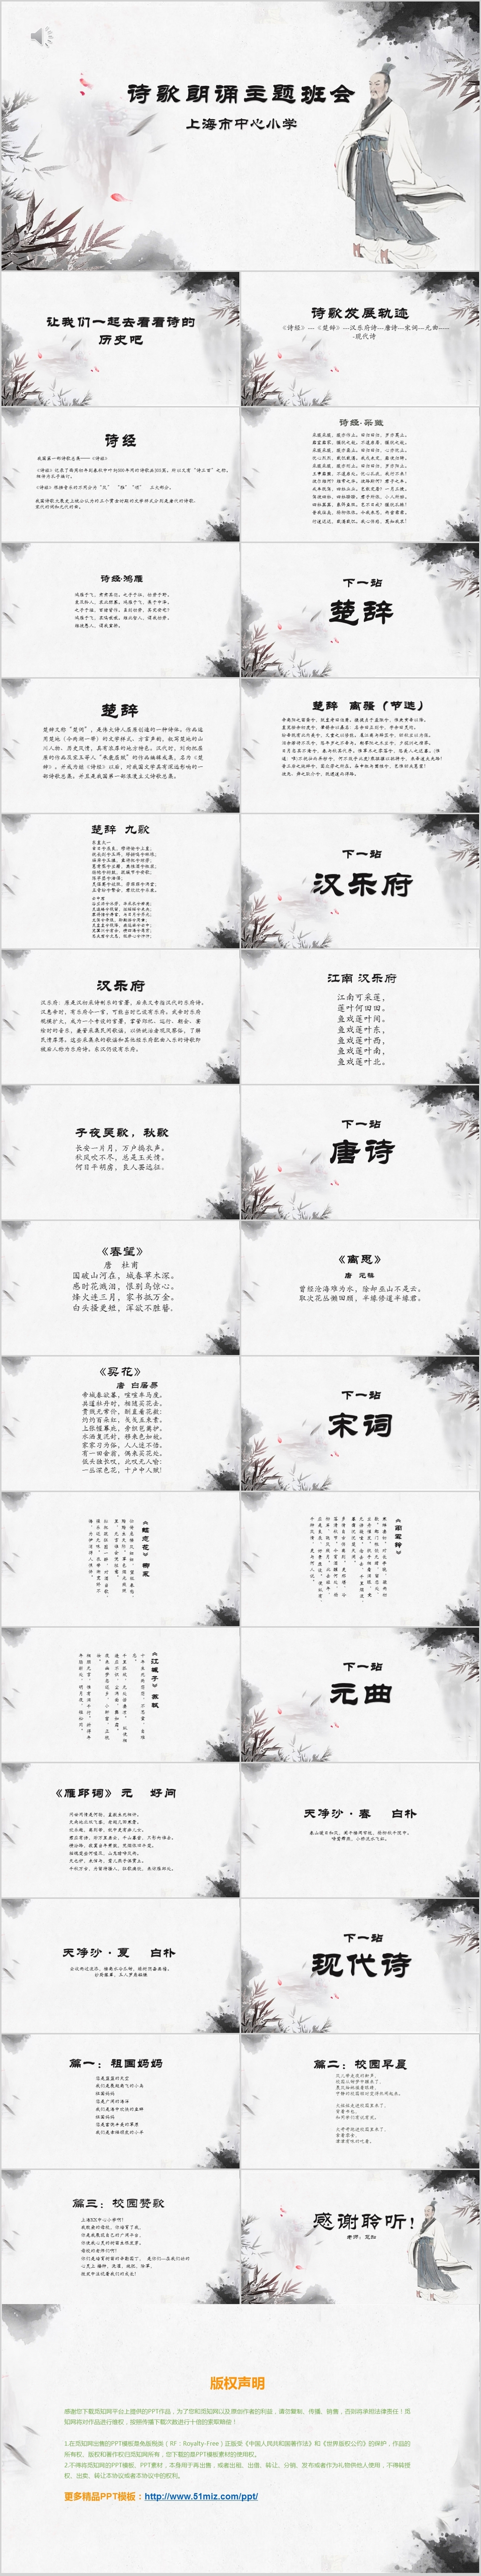 中国风中小学诗歌朗诵主题班会PPT模板